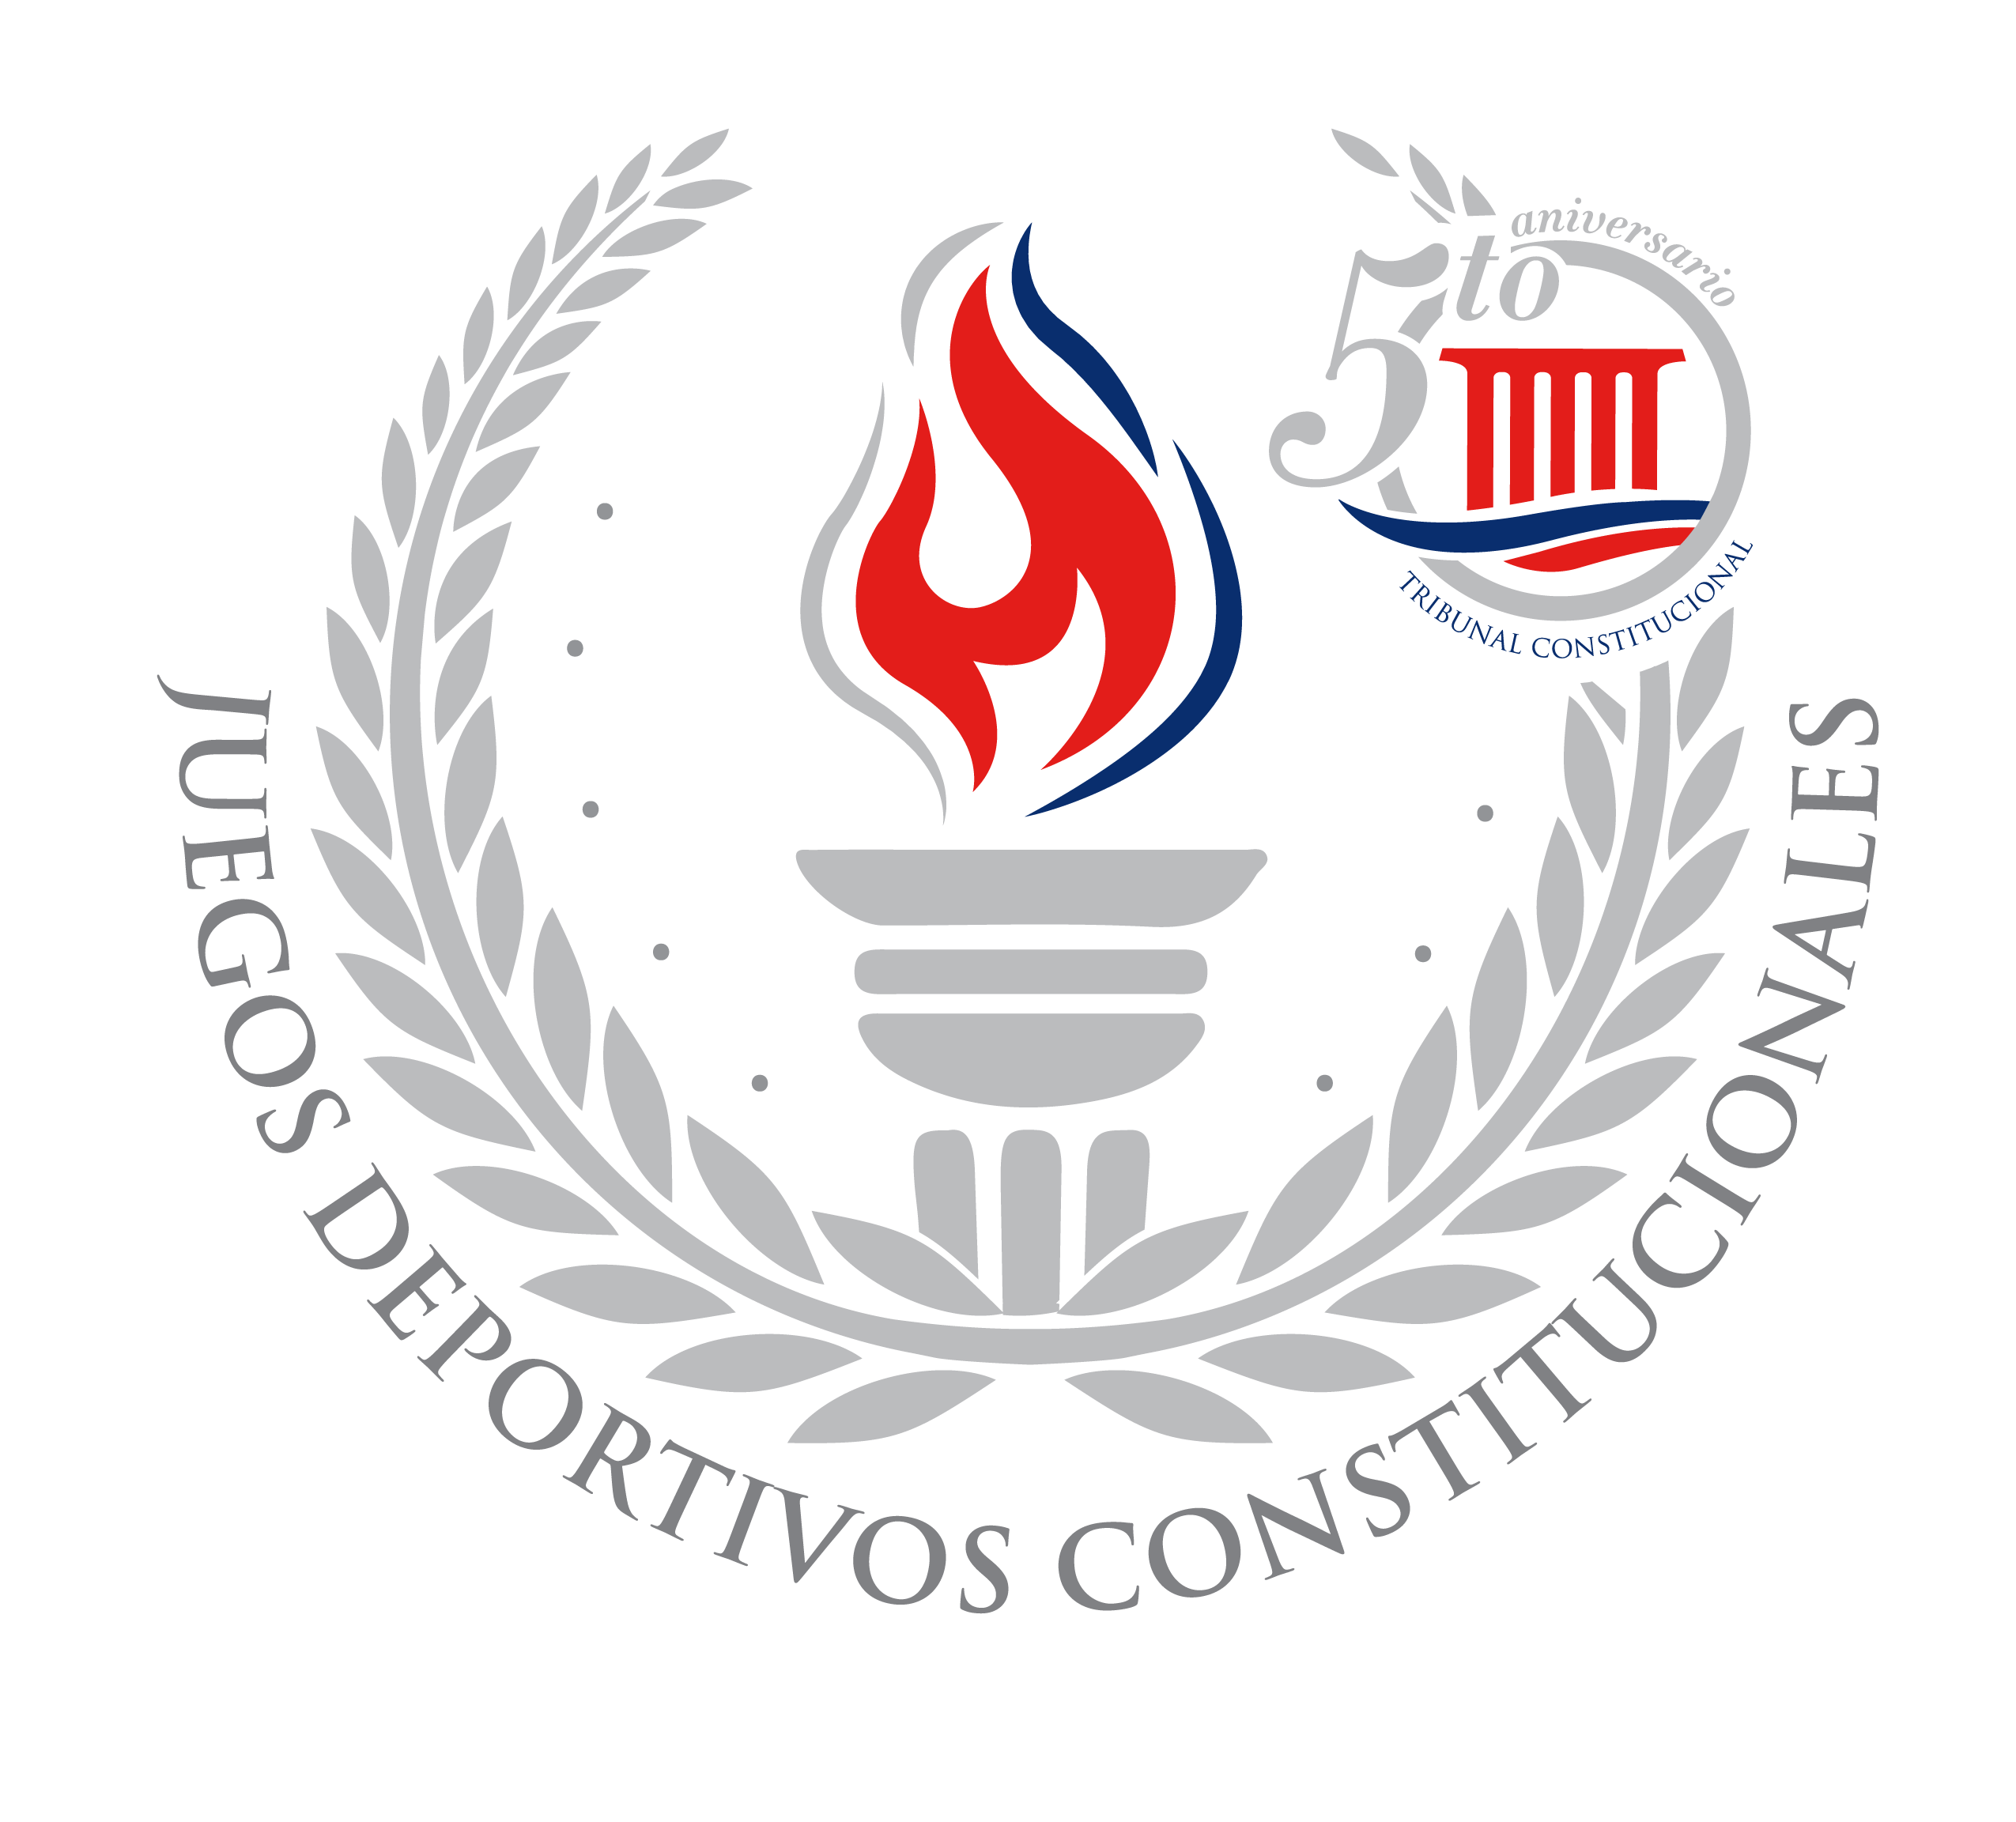 TC inaugurará hoy “Juegos Deportivos Constitucionales”